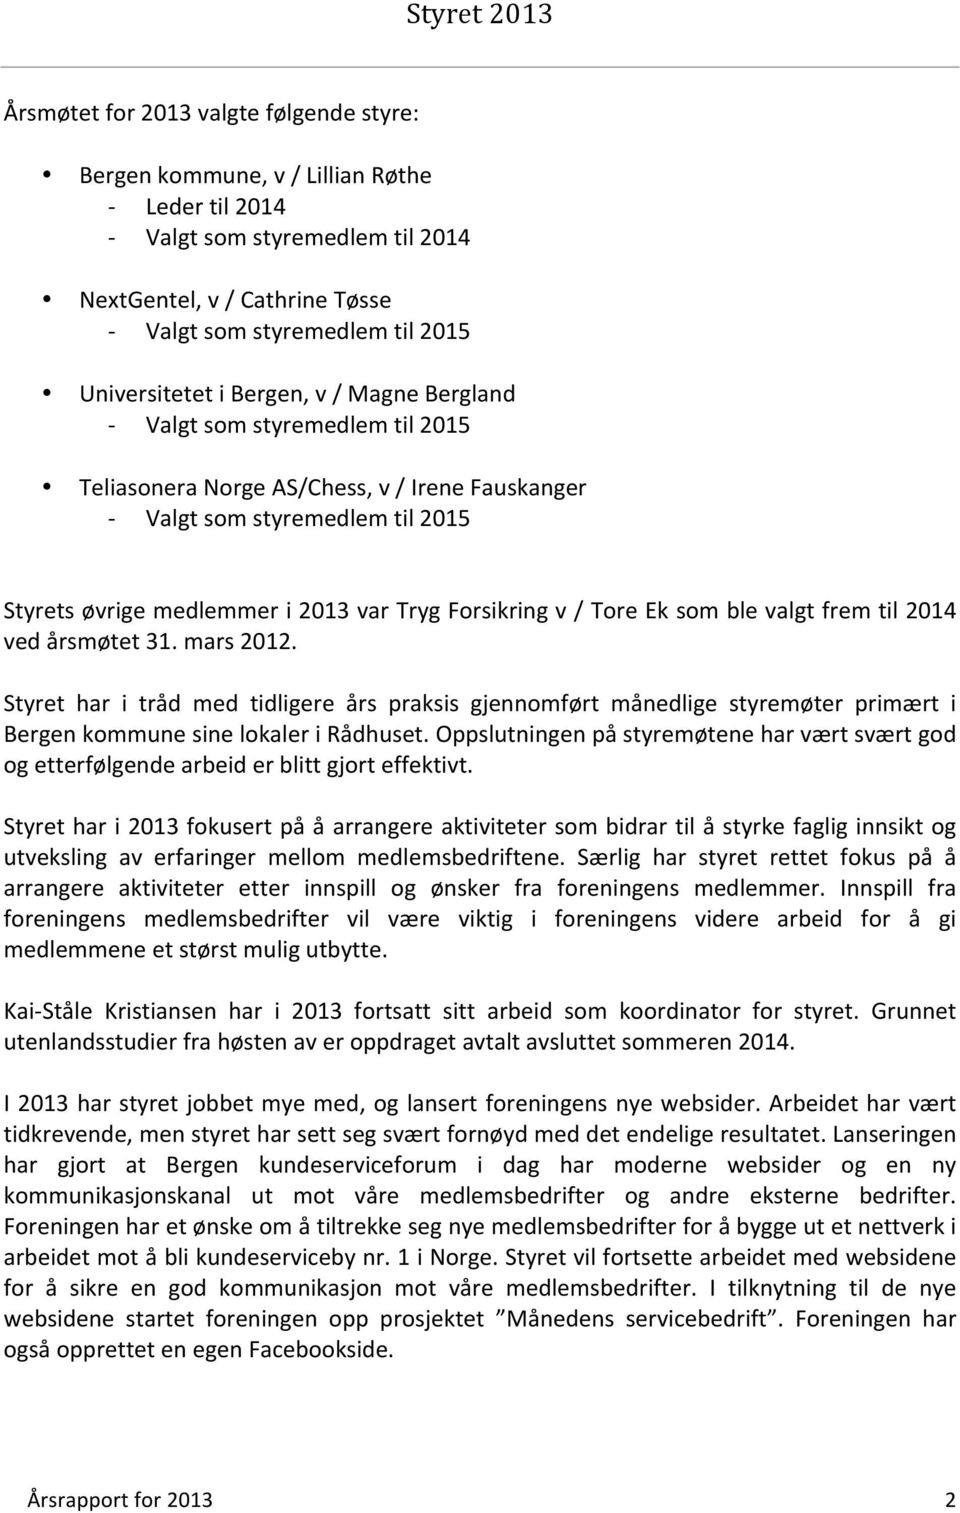 Tryg Forsikring v / Tore Ek som ble valgt frem til 2014 ved årsmøtet 31. mars 2012.